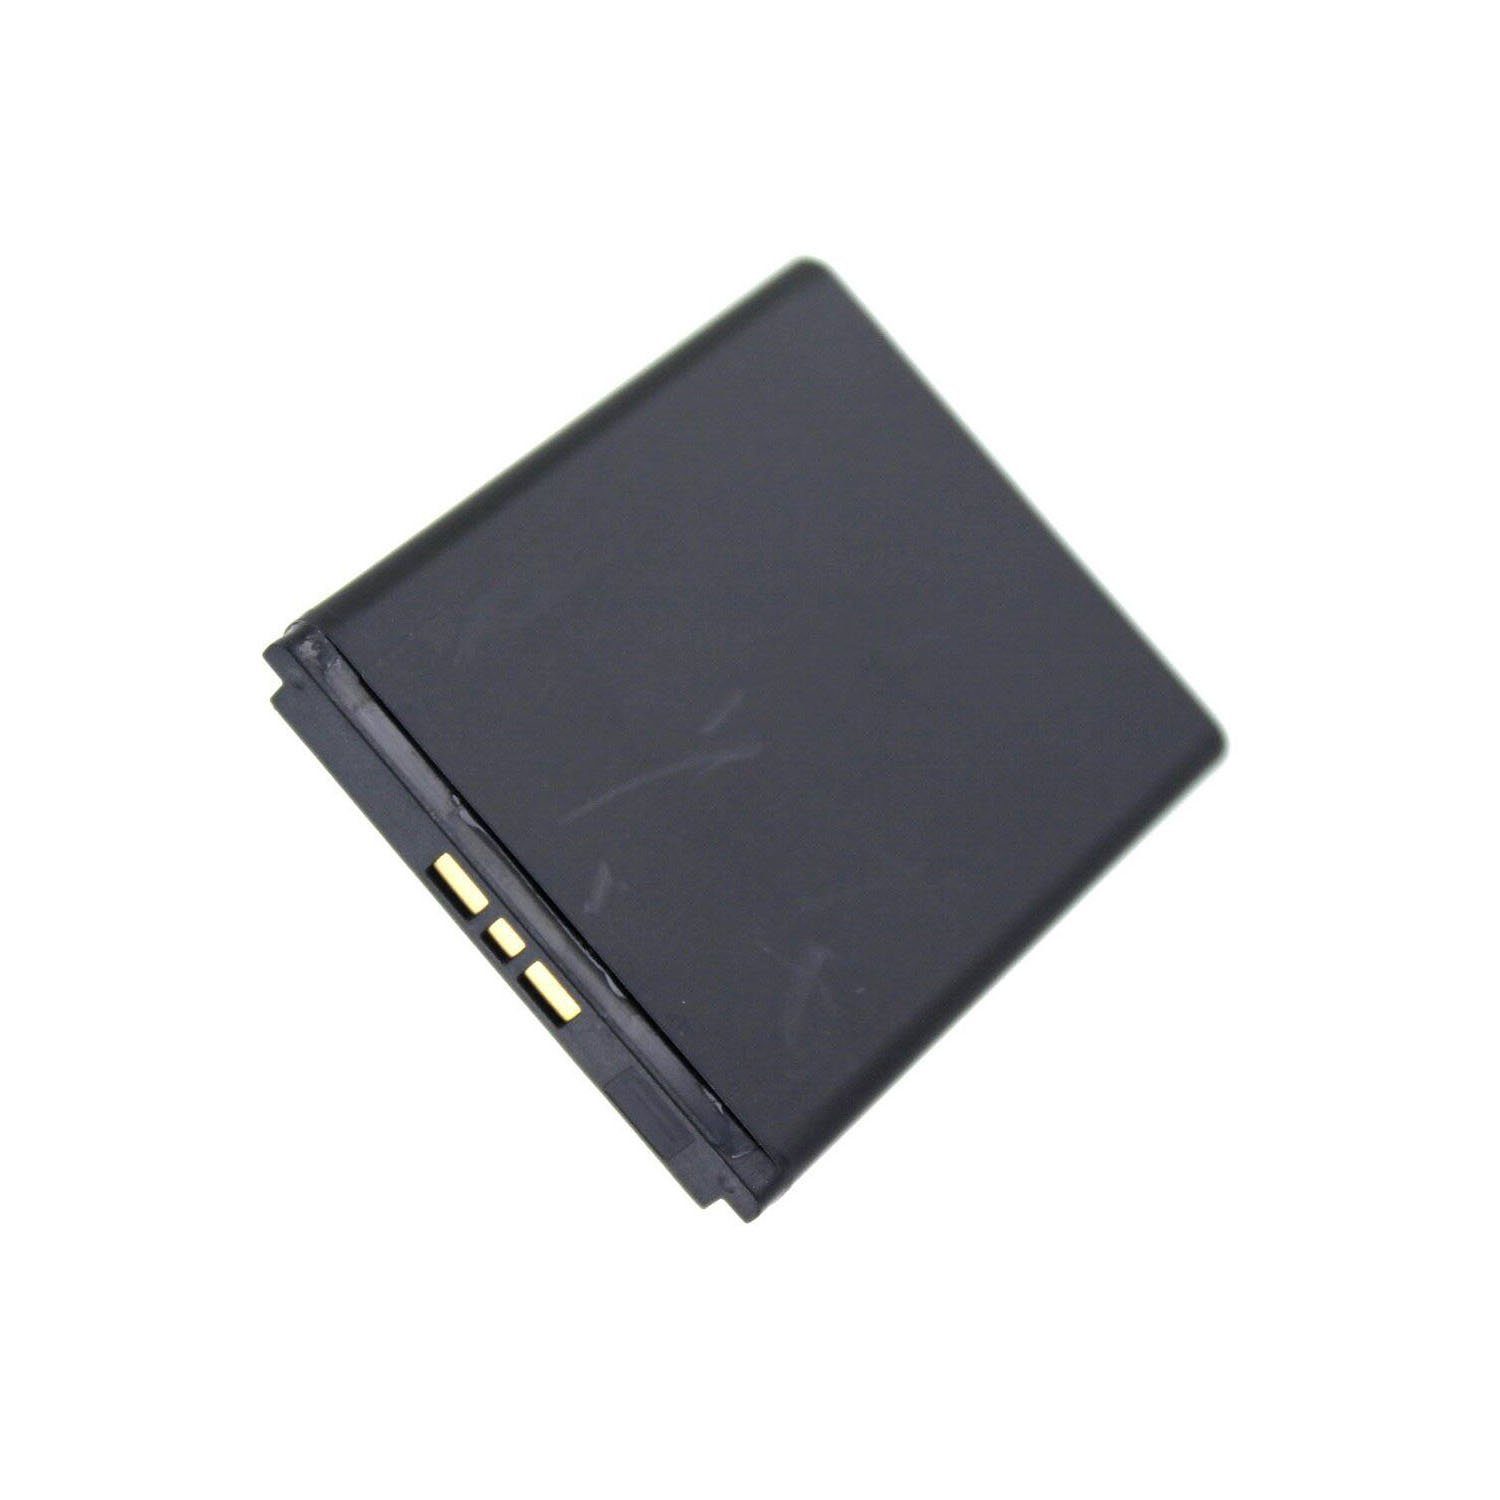 AGI kompatibel Akku mit W100I Sony Ericsson Akku Akku Spiro